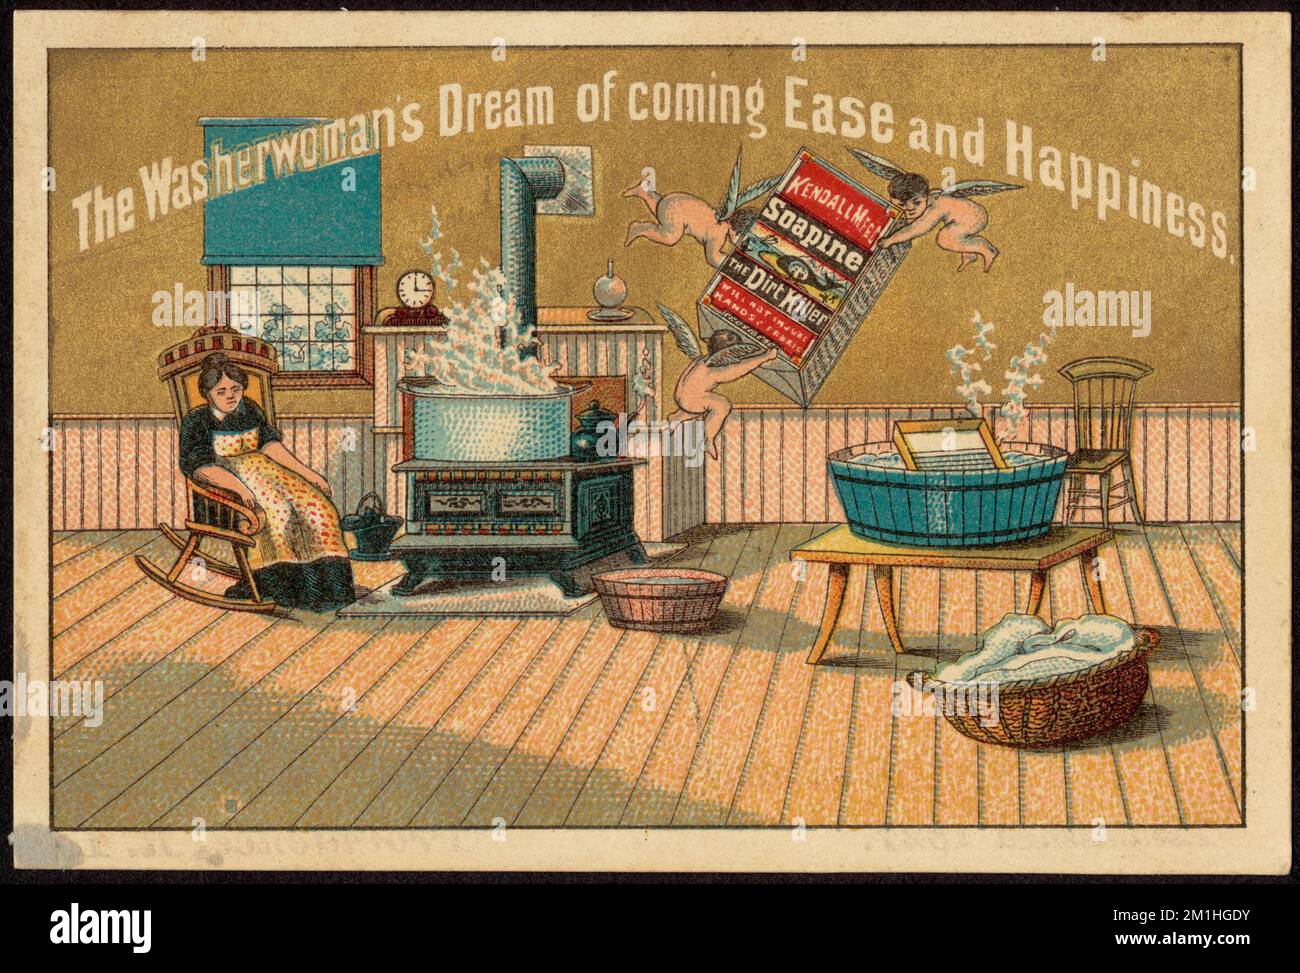 Der Traum der Washerfrau, nach Osten zu kommen und glücklich zu sein. , Frauen, Engel, Waschbecken, Waschbretter, Herde, Haushaltsseife, amerikanische Handelskarten des 19.. Jahrhunderts Stockfoto